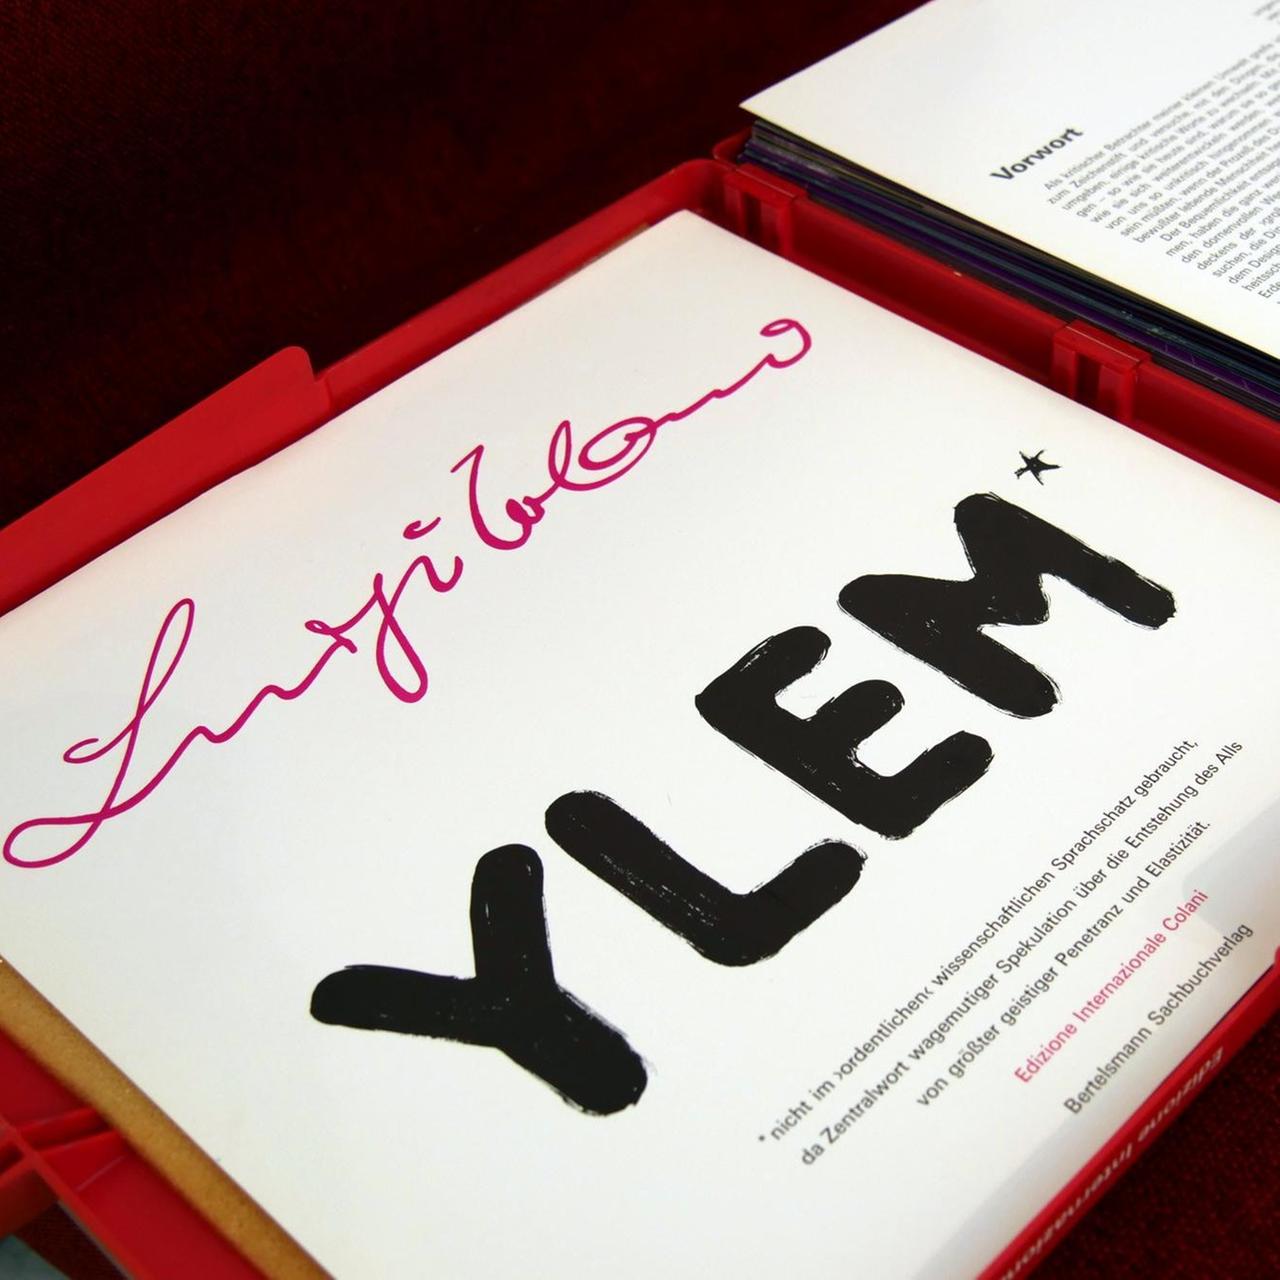 Der Design-Koffer "Ylem" enthält 120 Blätter mit Texten, Bildern und Zeichnungen der Luigi-Colani-Kollektionen bis zum Jahr 1971